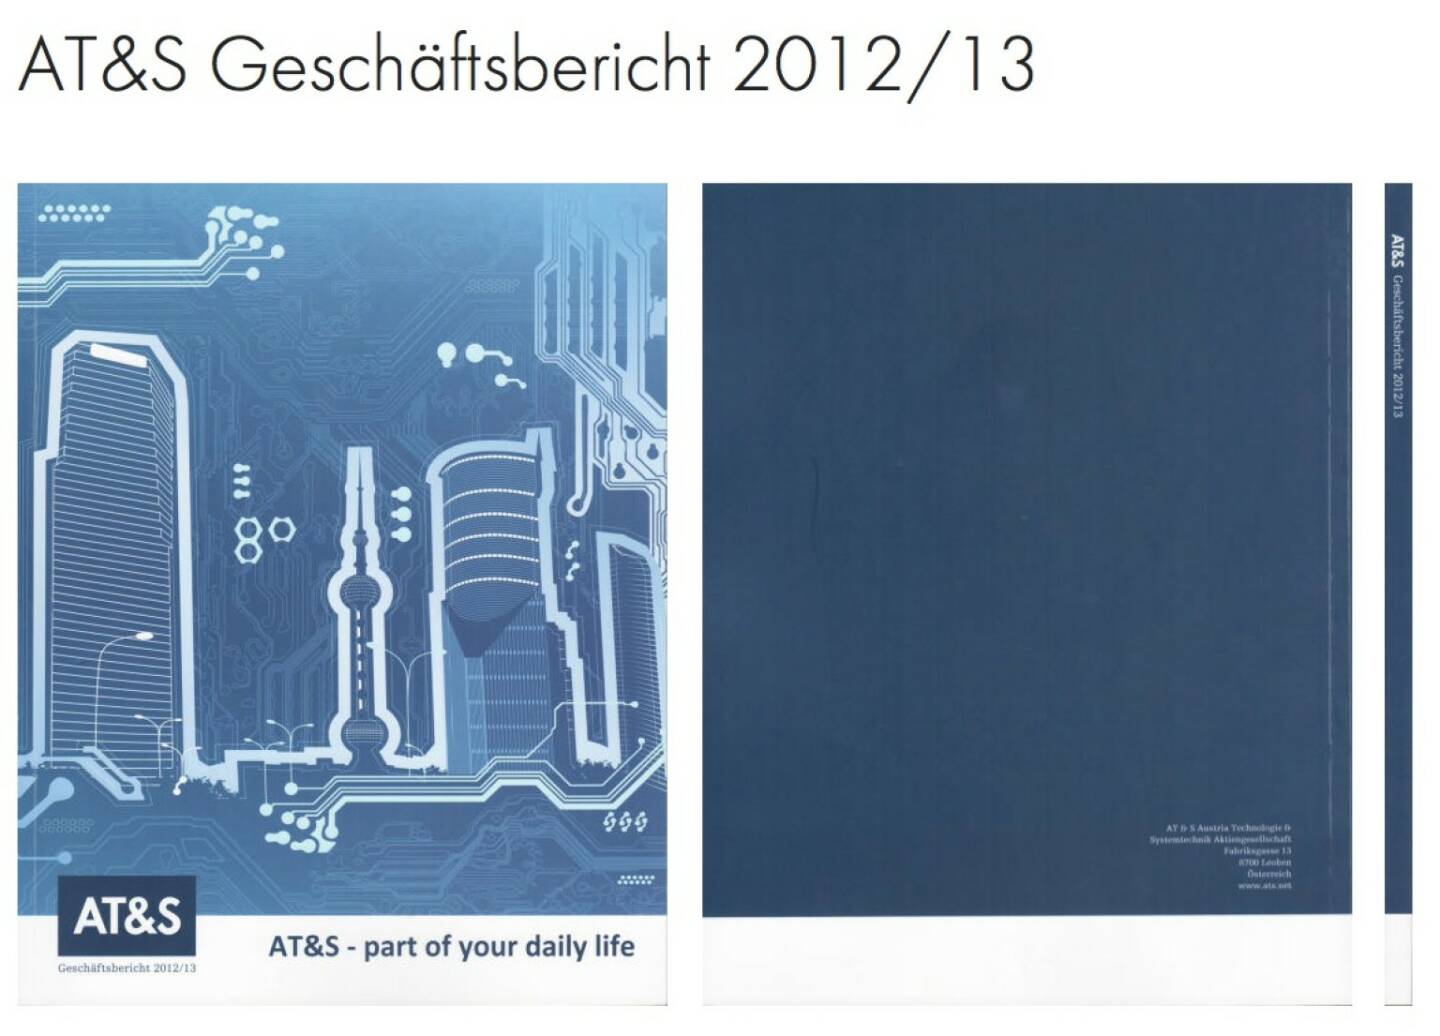 AT&S, ATS Geschäftsbericht 2012/13 http://josefchladek.com/companyreport/ats_geschaftsbericht_201213#image-8